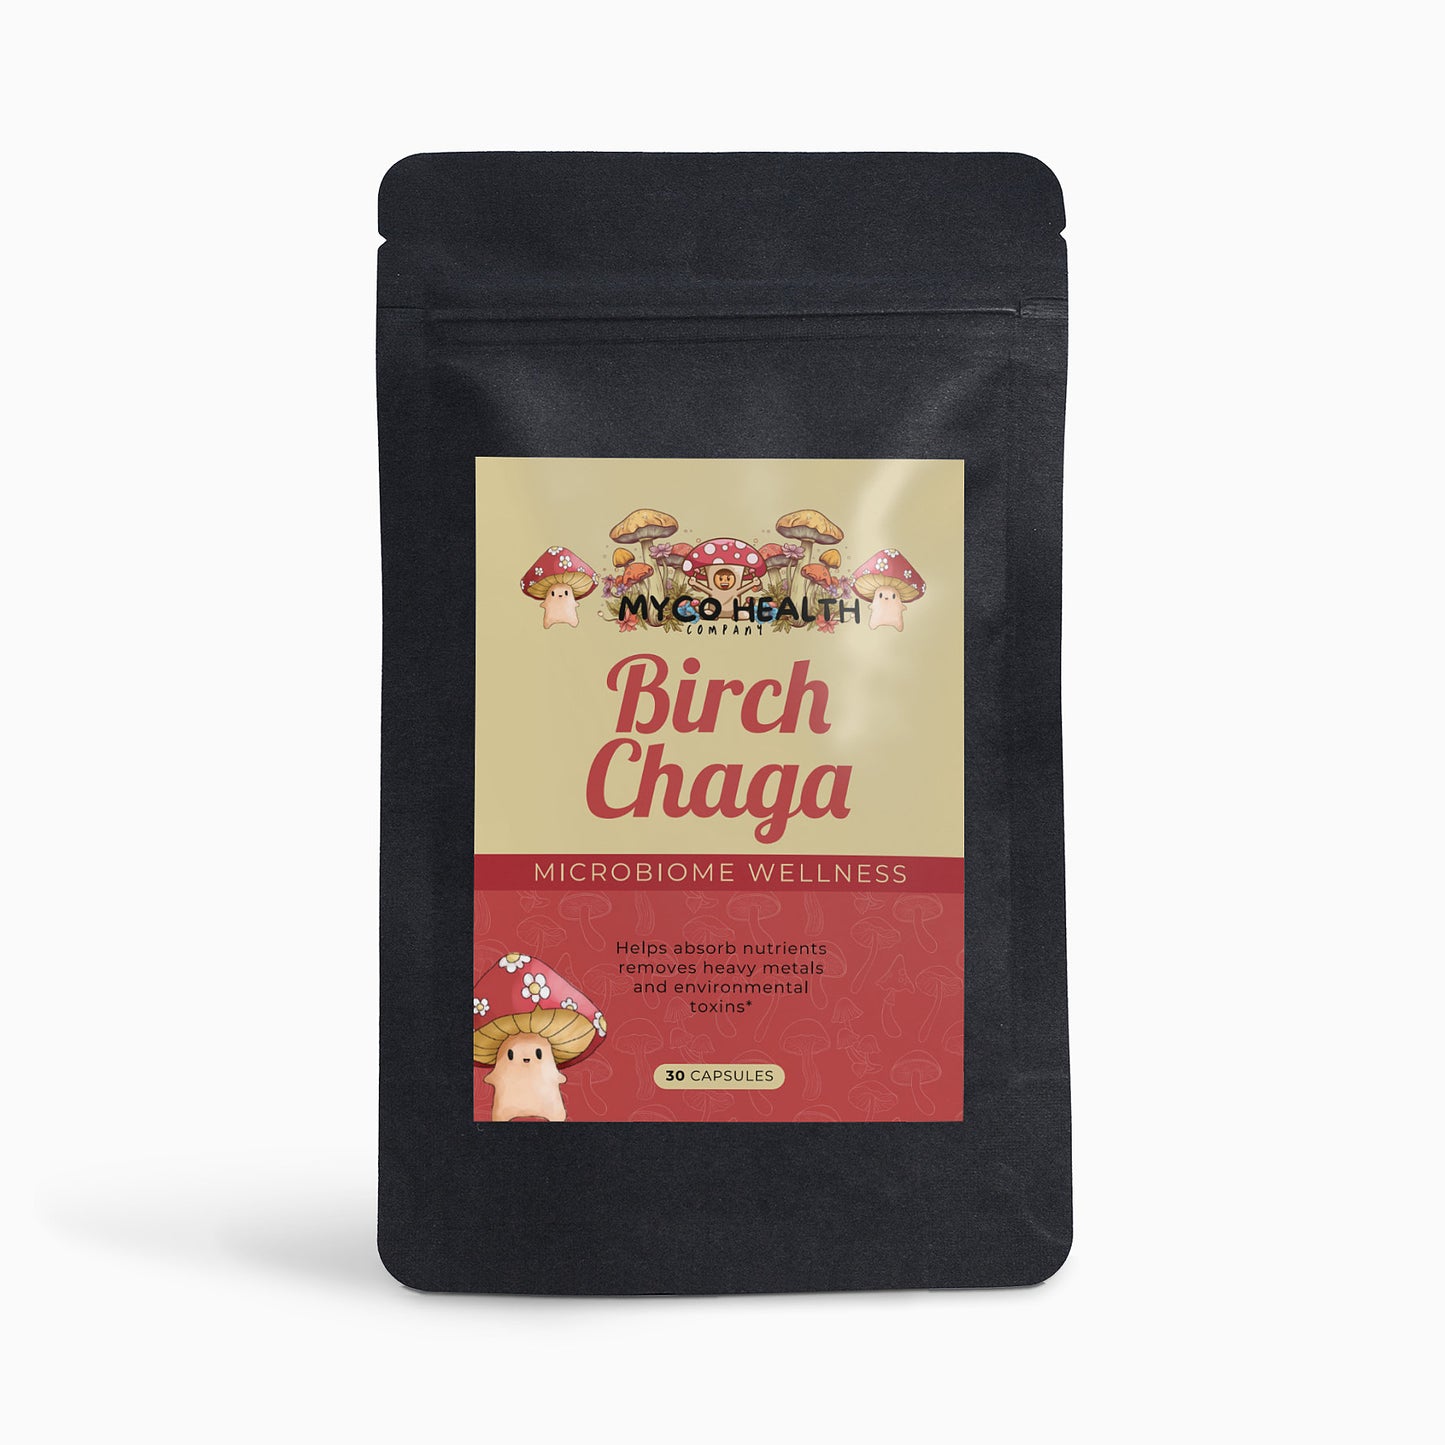 Birch Chaga Capsules